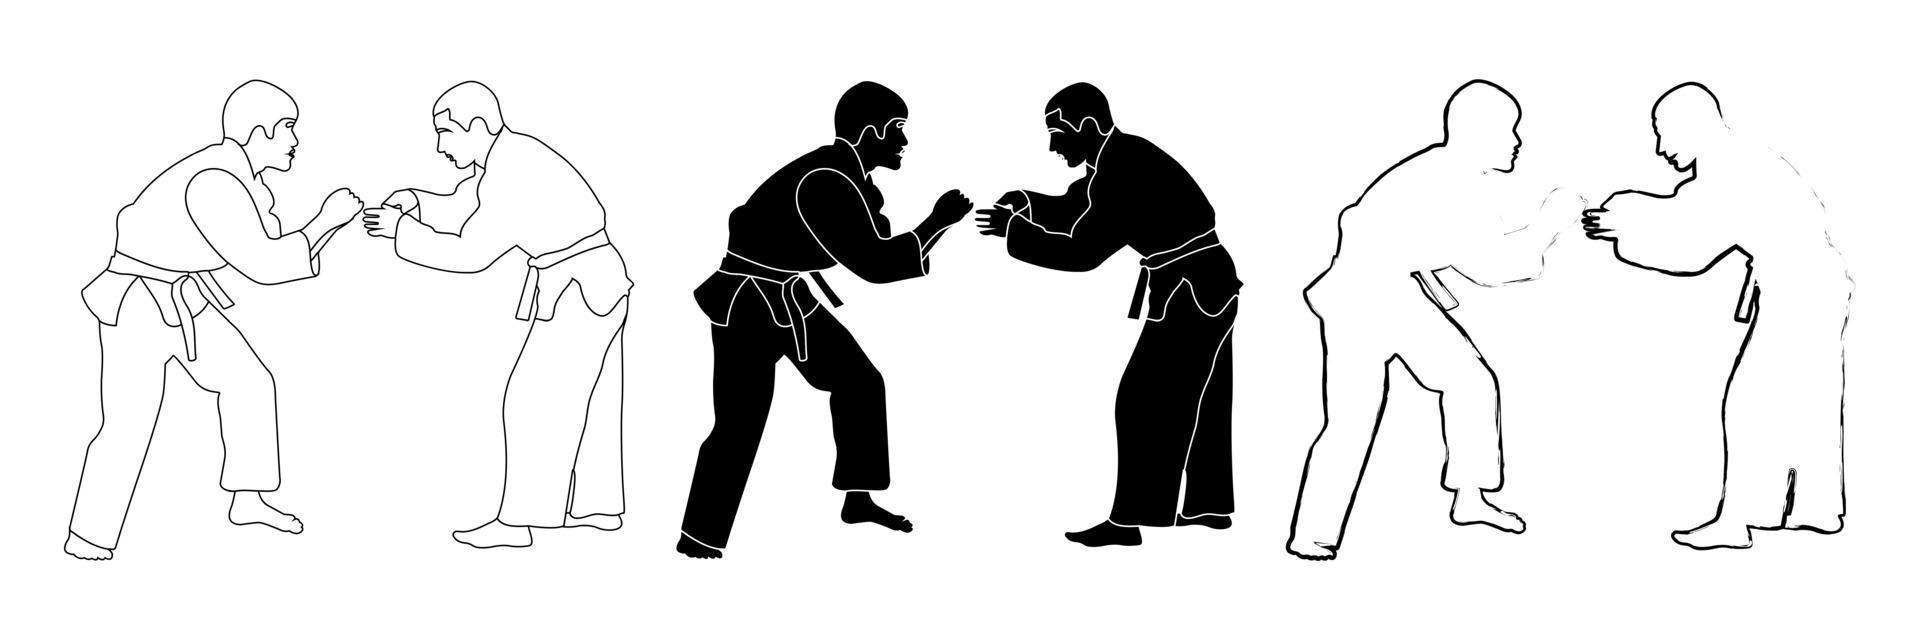 croquis de contour d'une silhouette noire et blanche d'un athlète judoka dans un duel, combat. judo. arts martiaux. vecteur